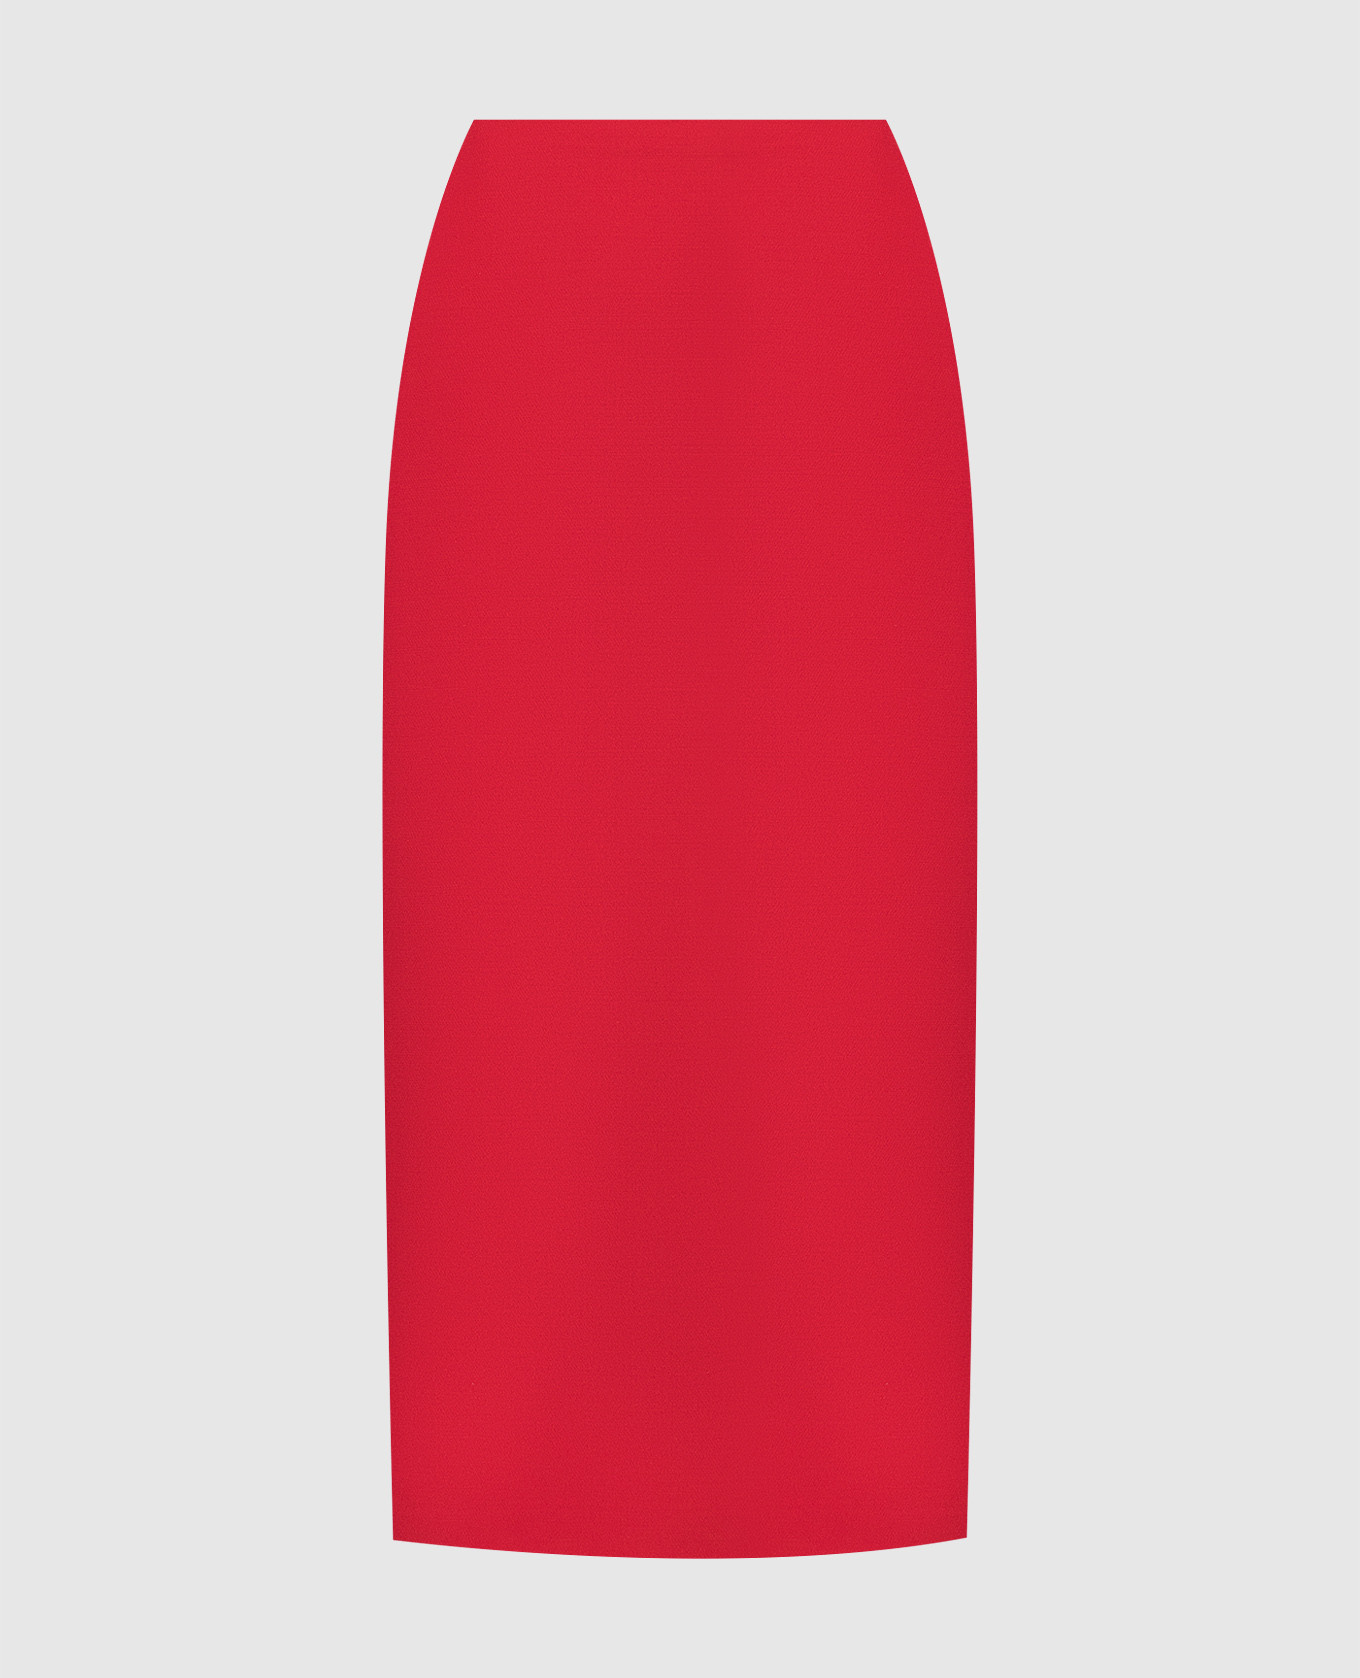 Красная юбка меди с шерстью и шелком.